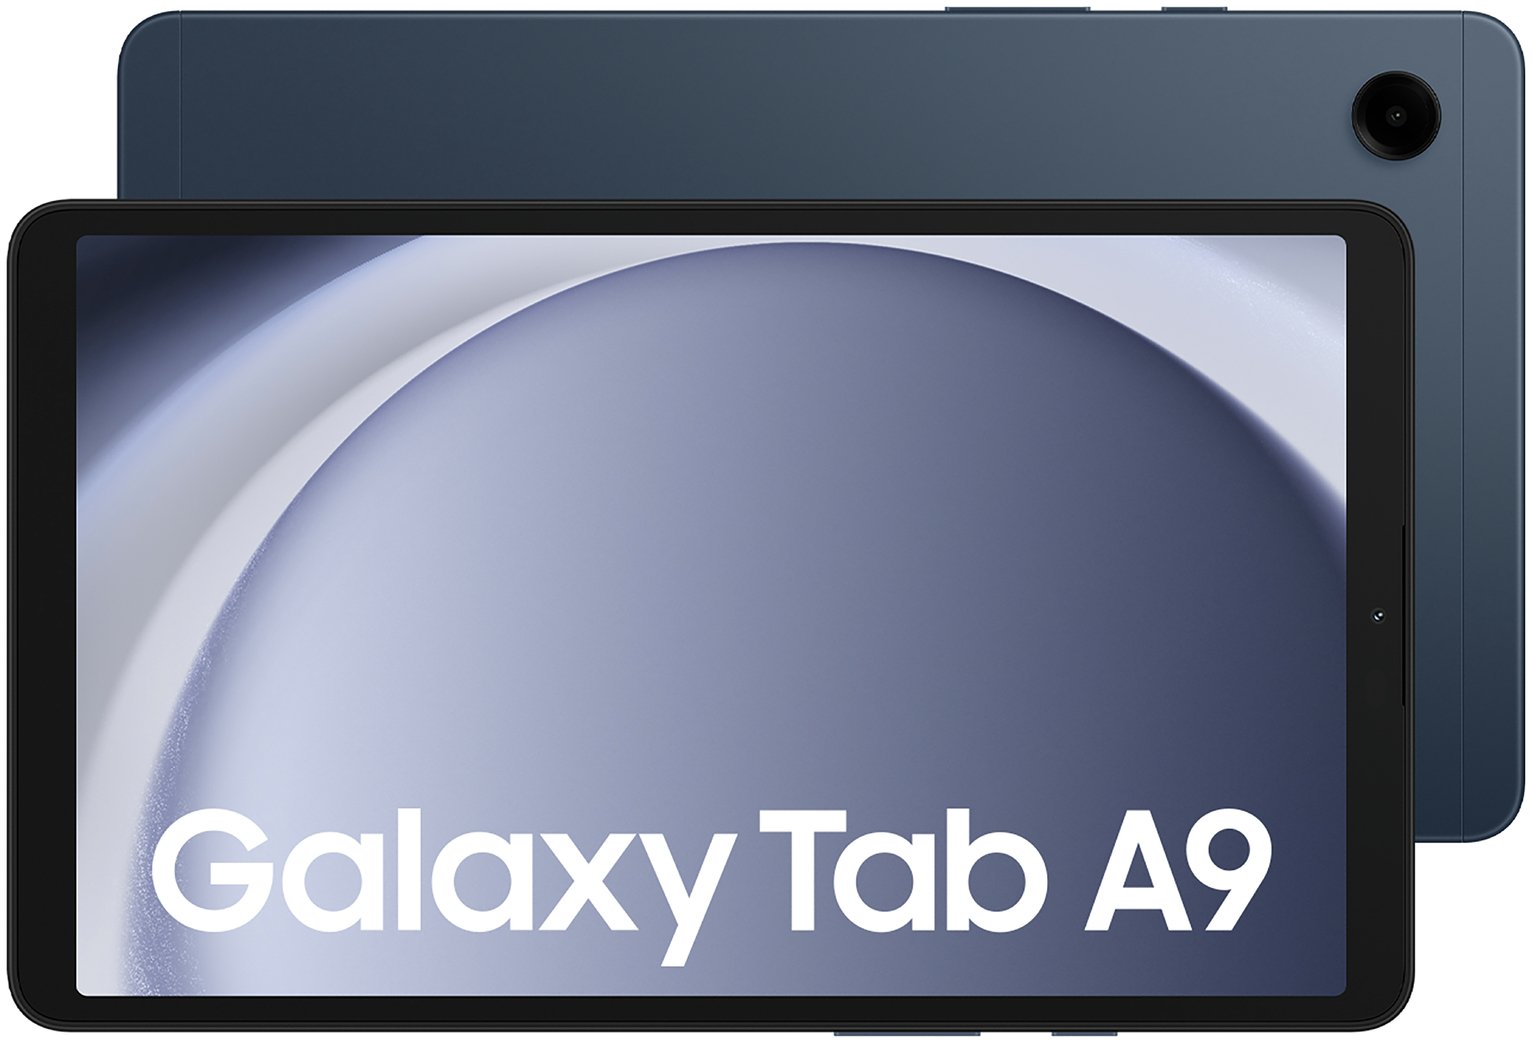 Samsung Galaxy Tab A9 8in 64GB Wi-Fi Tablet - Navy